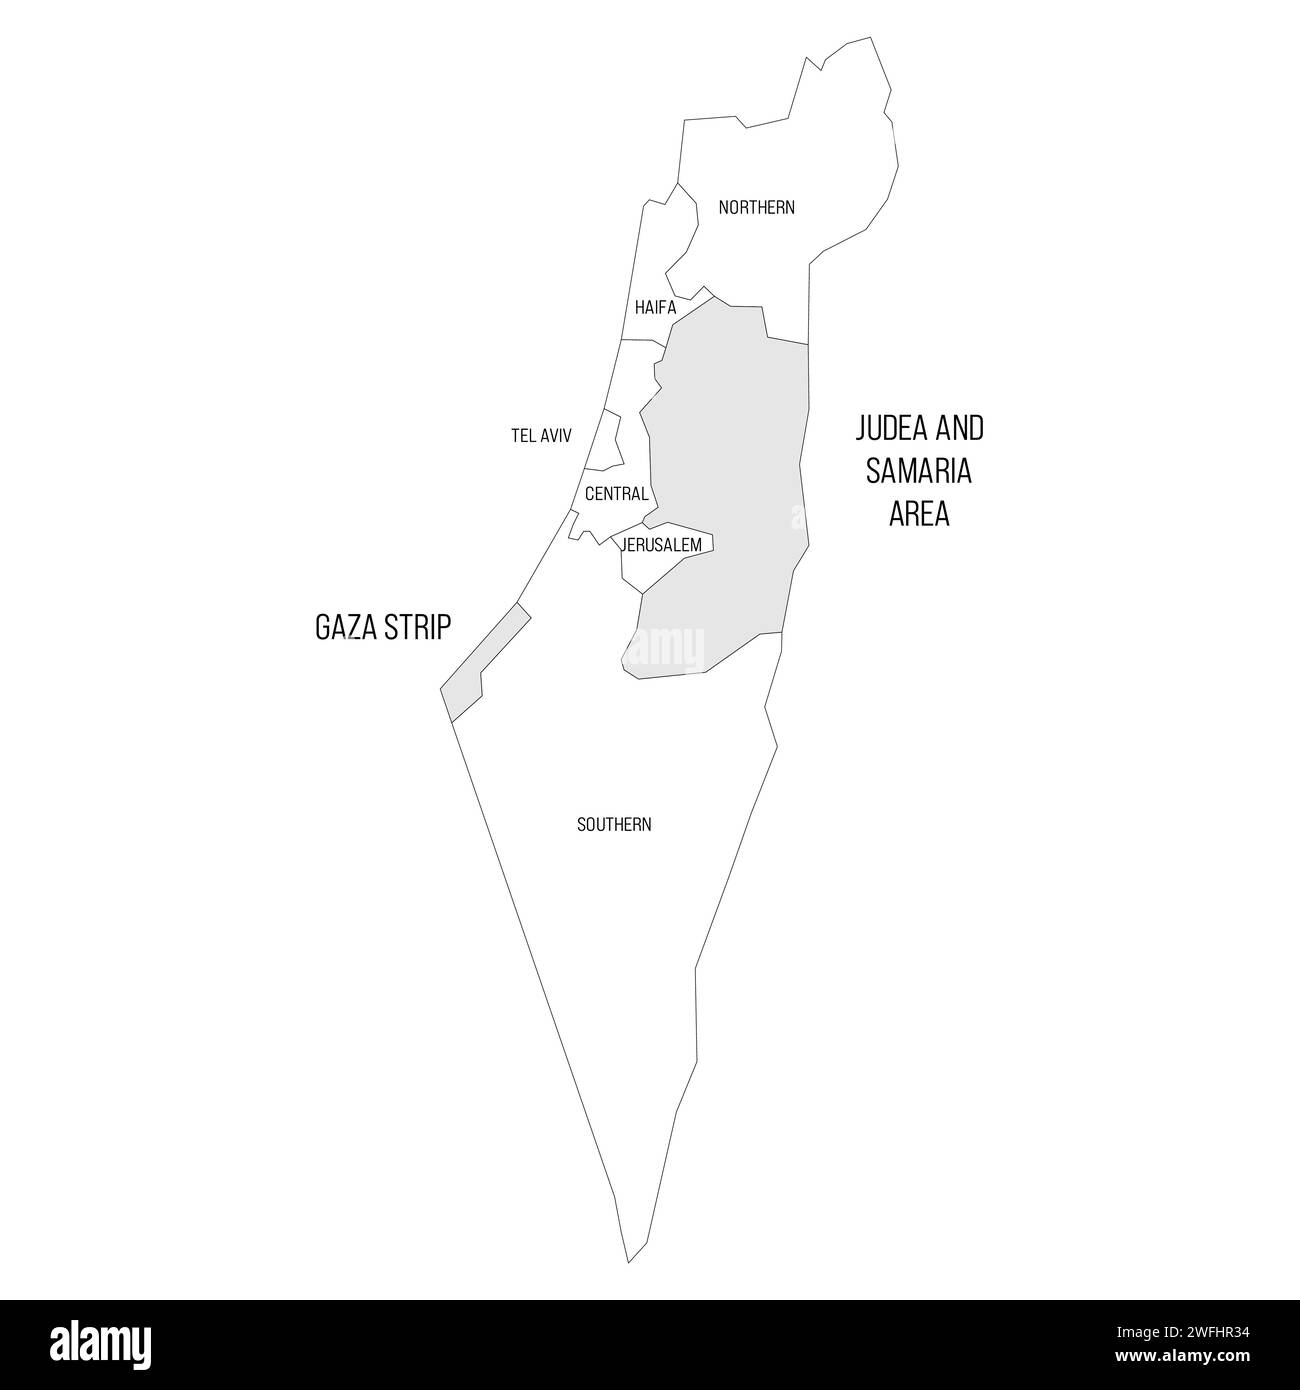 Mappa politica israeliana delle divisioni amministrative - distretti, Striscia di Gaza, Judea e Samaria. Mappa vettoriale in bianco e nero. Illustrazione Vettoriale